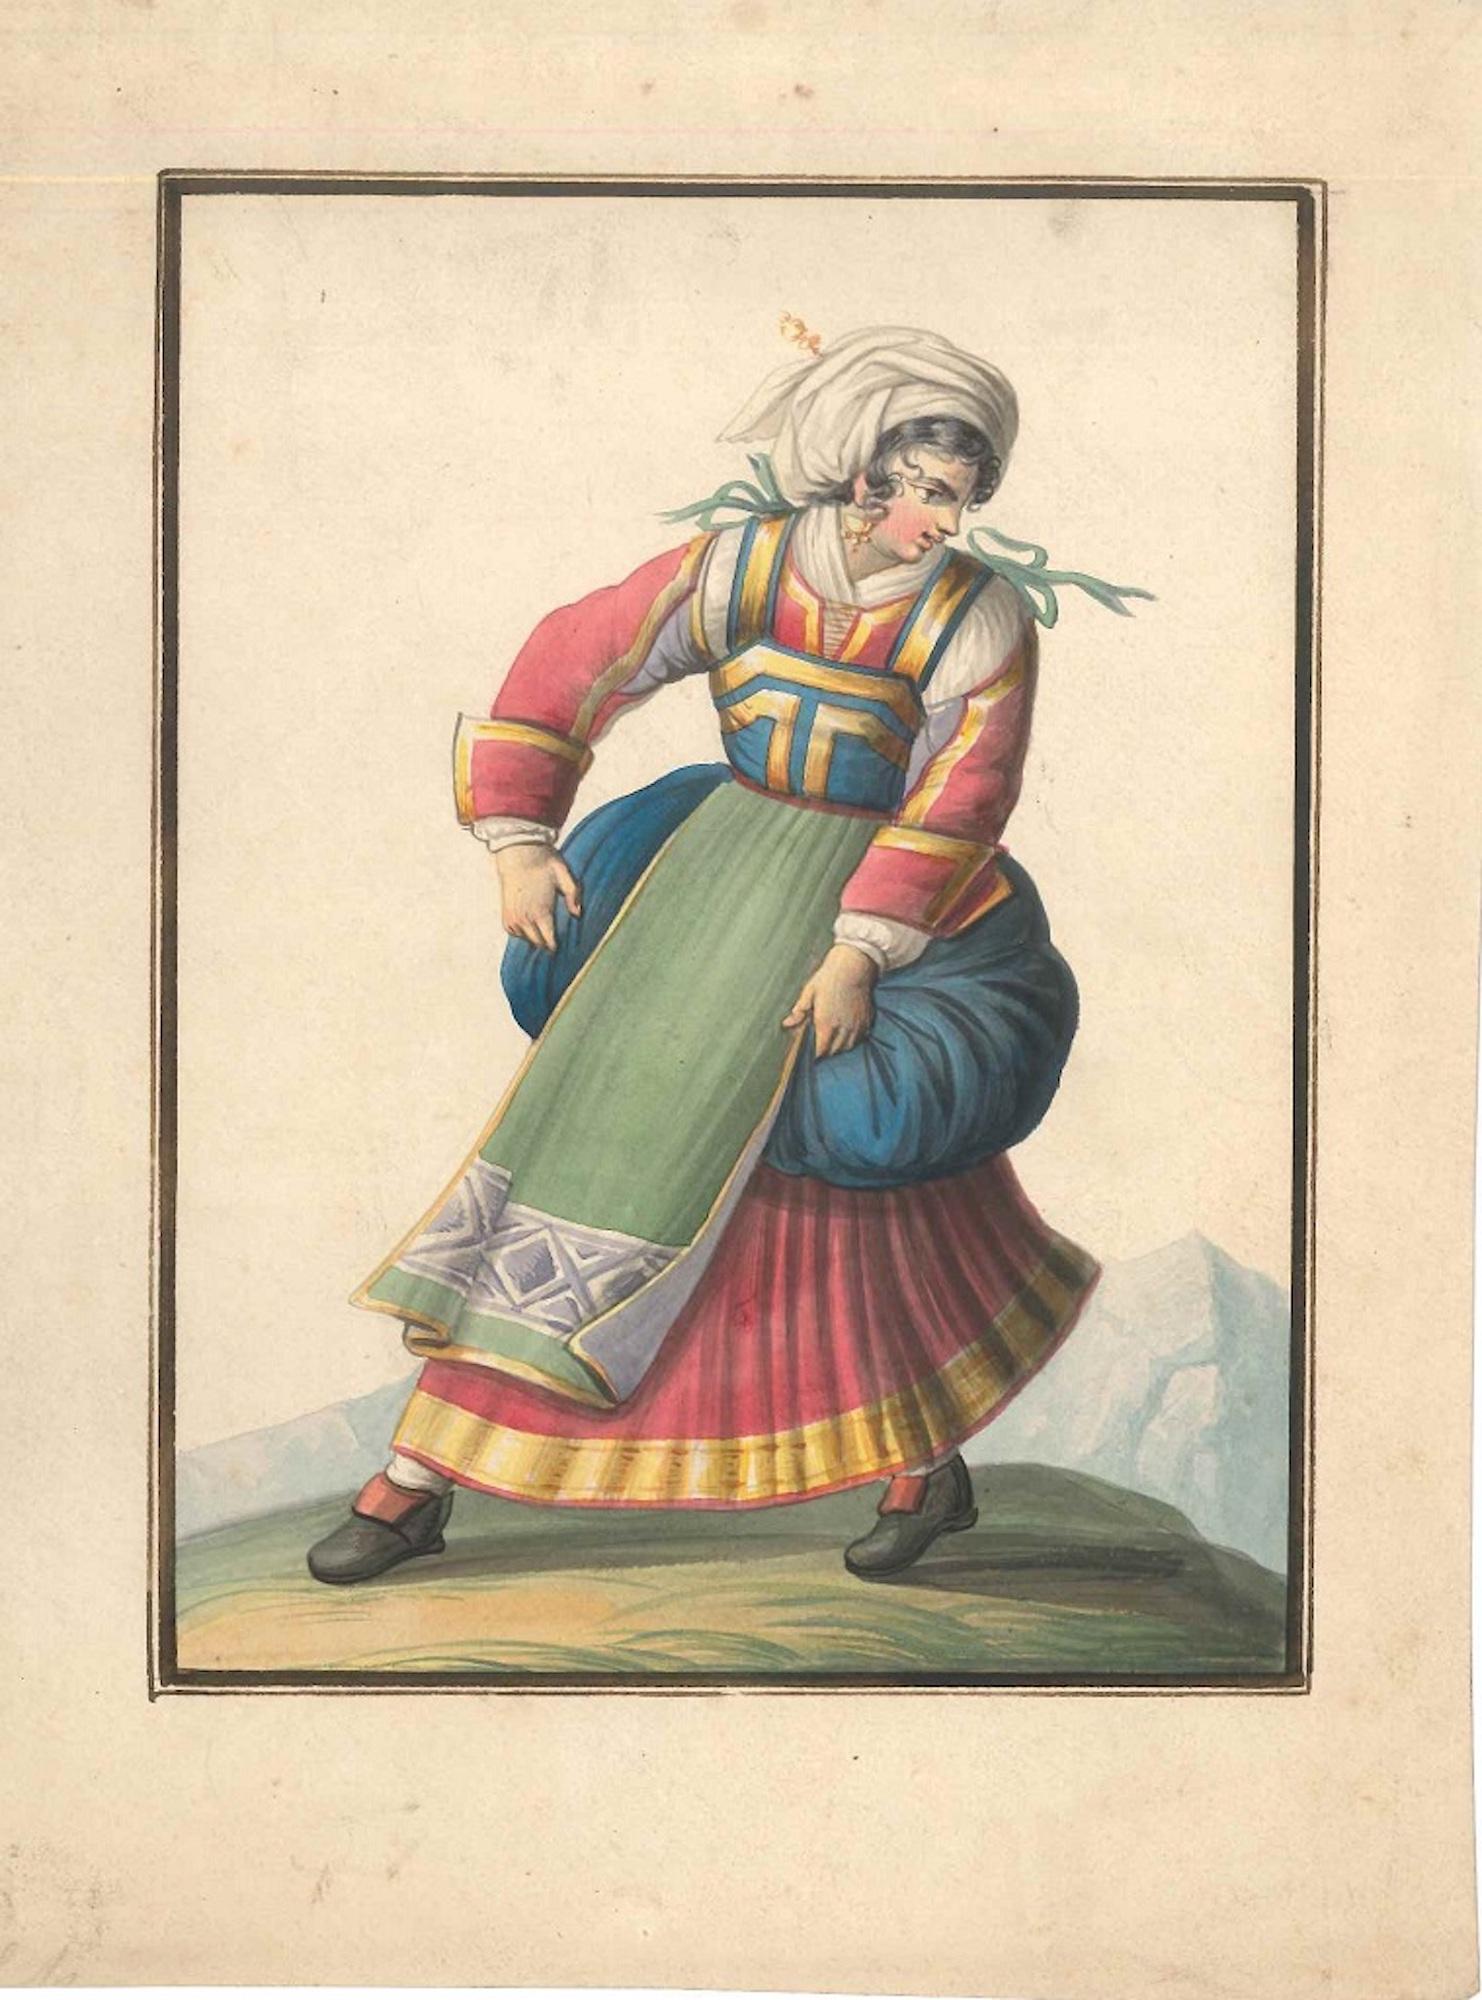 Woman in Typical Italian Costumes   - Watercolor by M. De Vito - 1820 ca. - Art by Michela De Vito